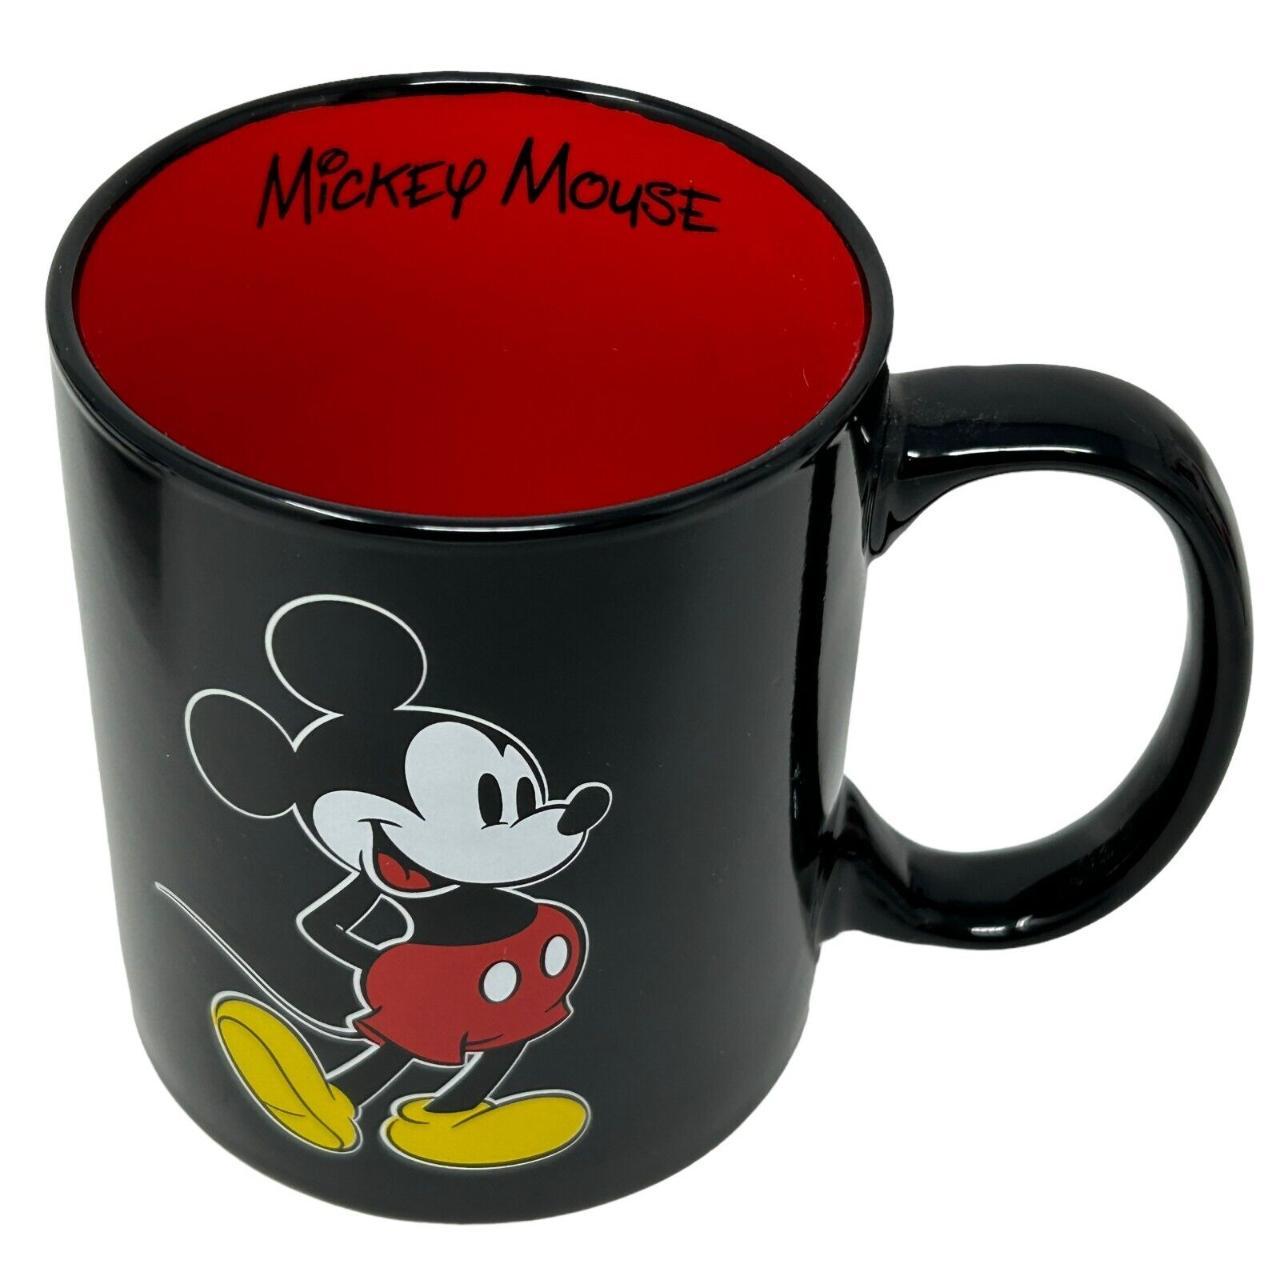 Disney Mickey Mouse Mug and Mug Warmer